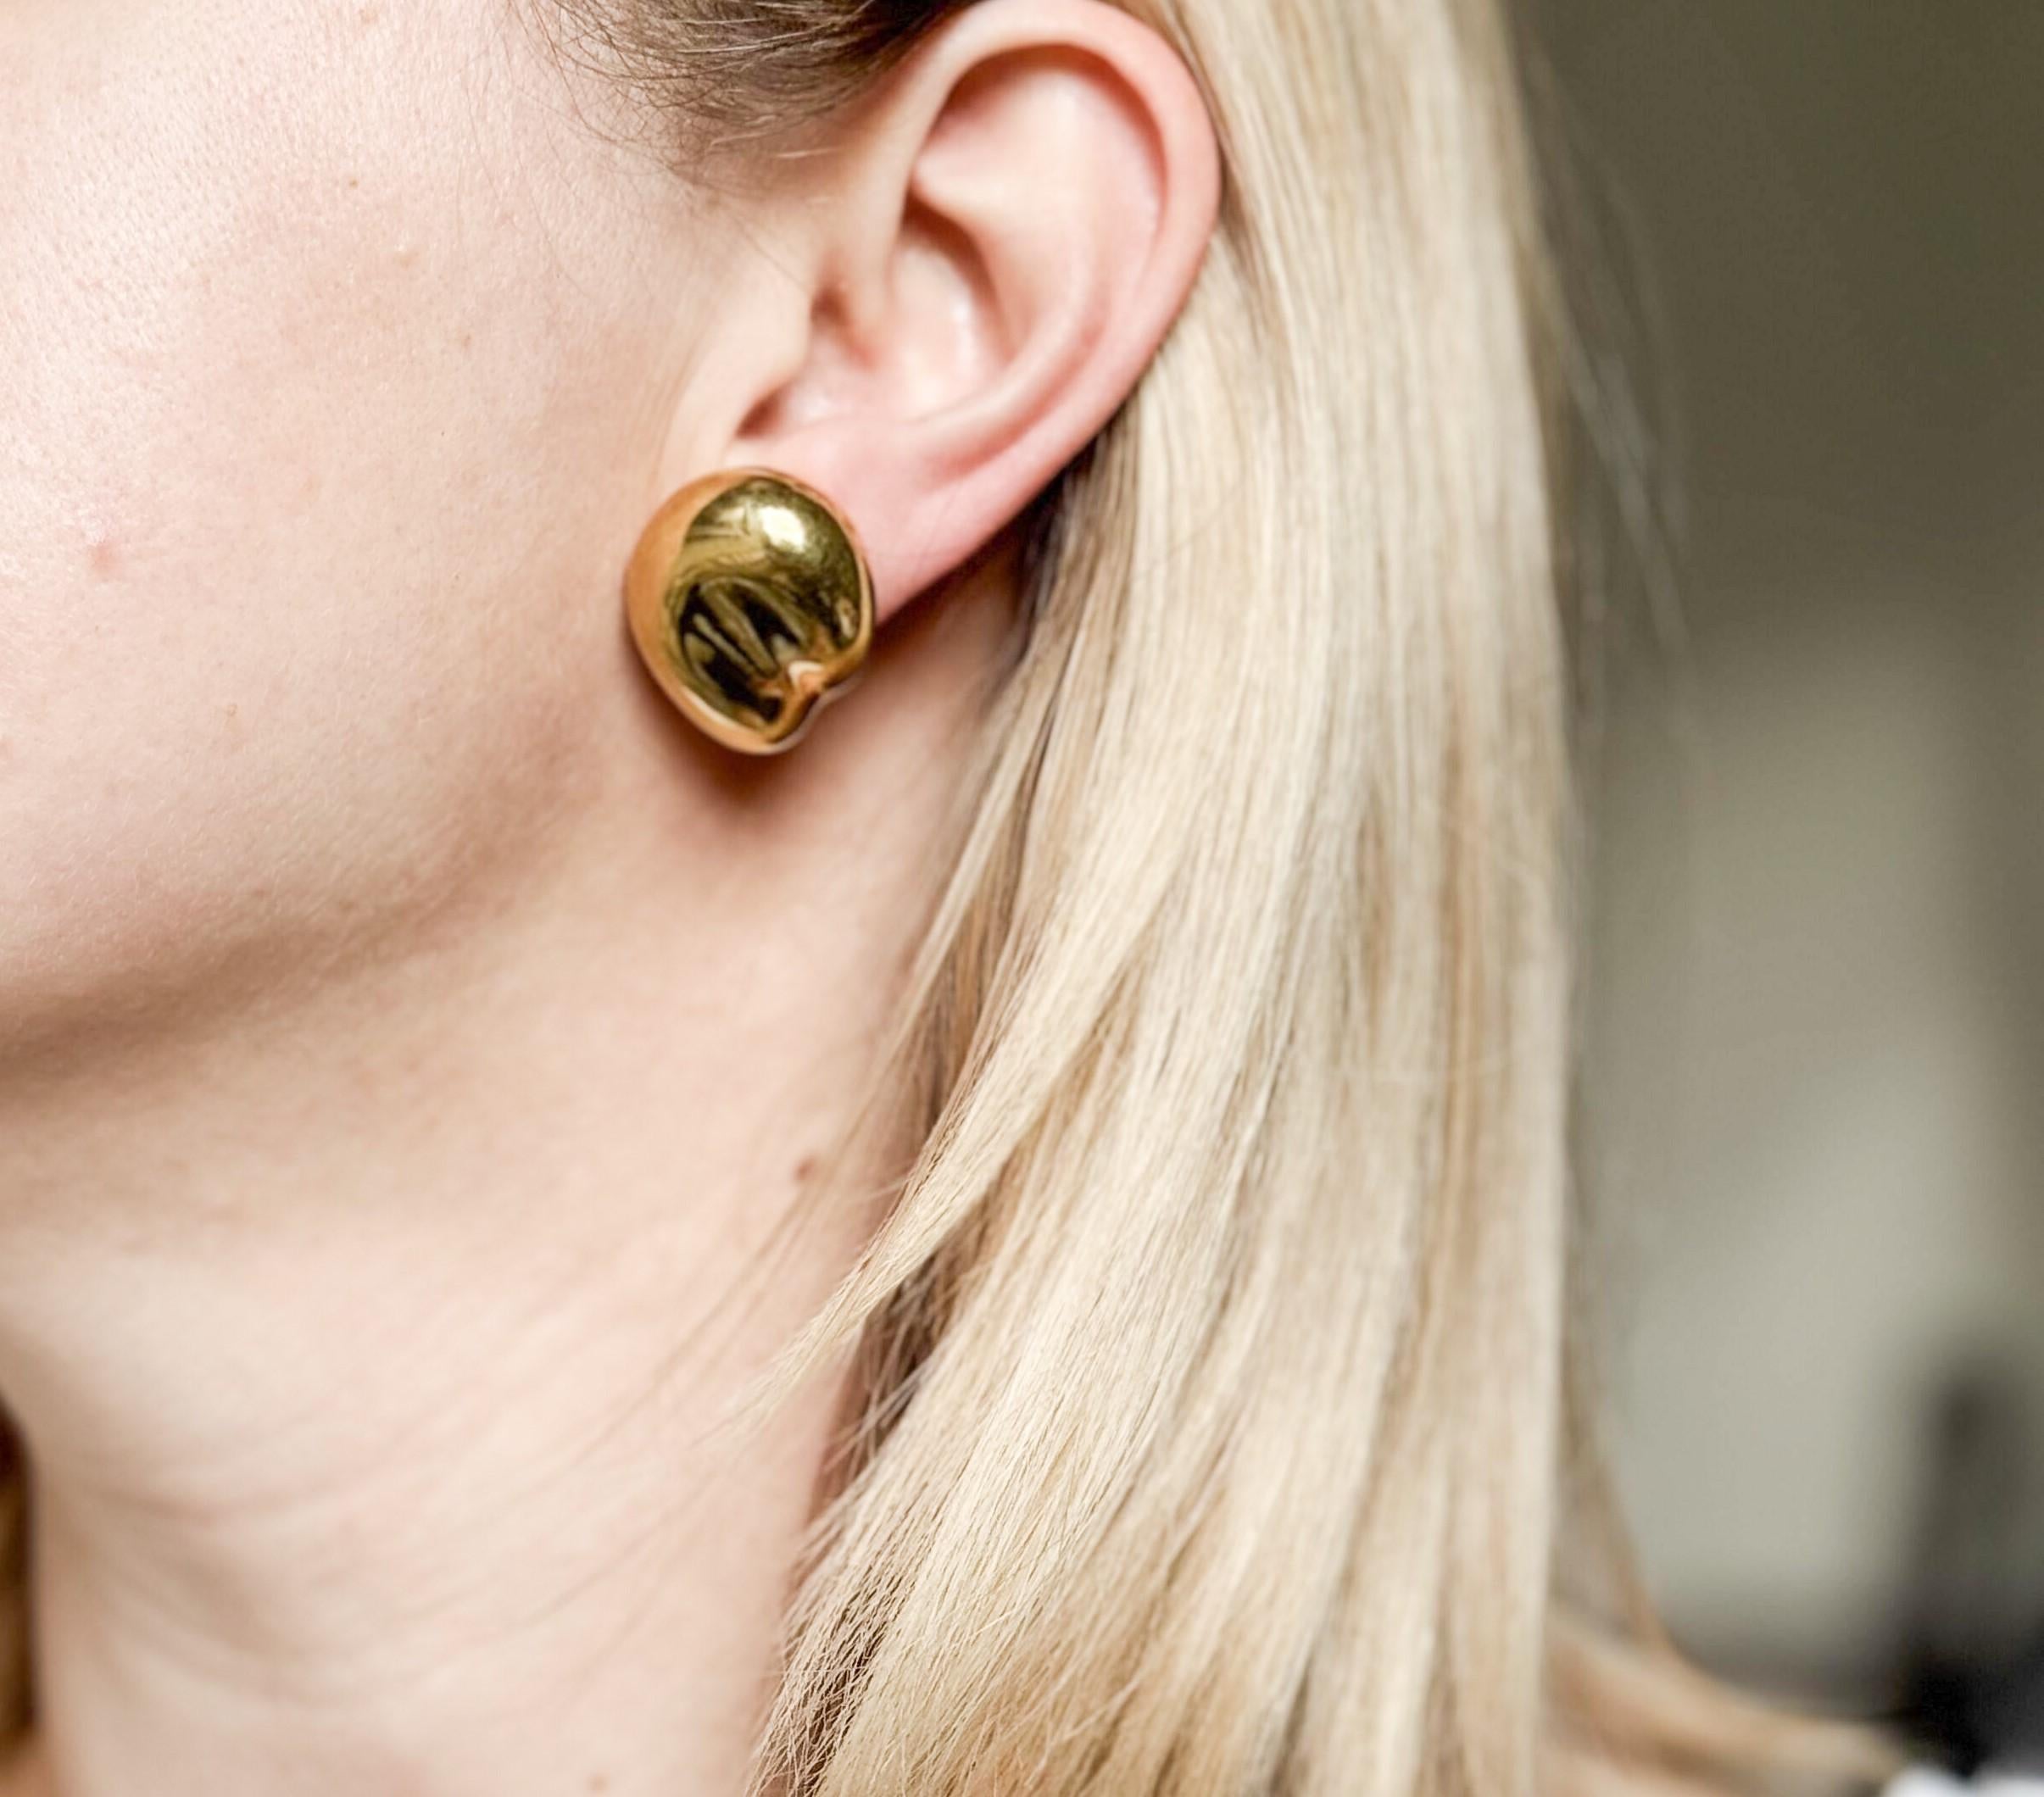 Paire de boucles d'oreilles iconiques Bean, grand format, réalisées en or 18k par Elsa Peretti pour Tiffany & Co. Les boucles d'oreilles sont livrées dans un coffret AT&T. Dimensions : 25 mm x 21 mm. Marqué : Tiffany & Co, 18k, Peretti. Poids -